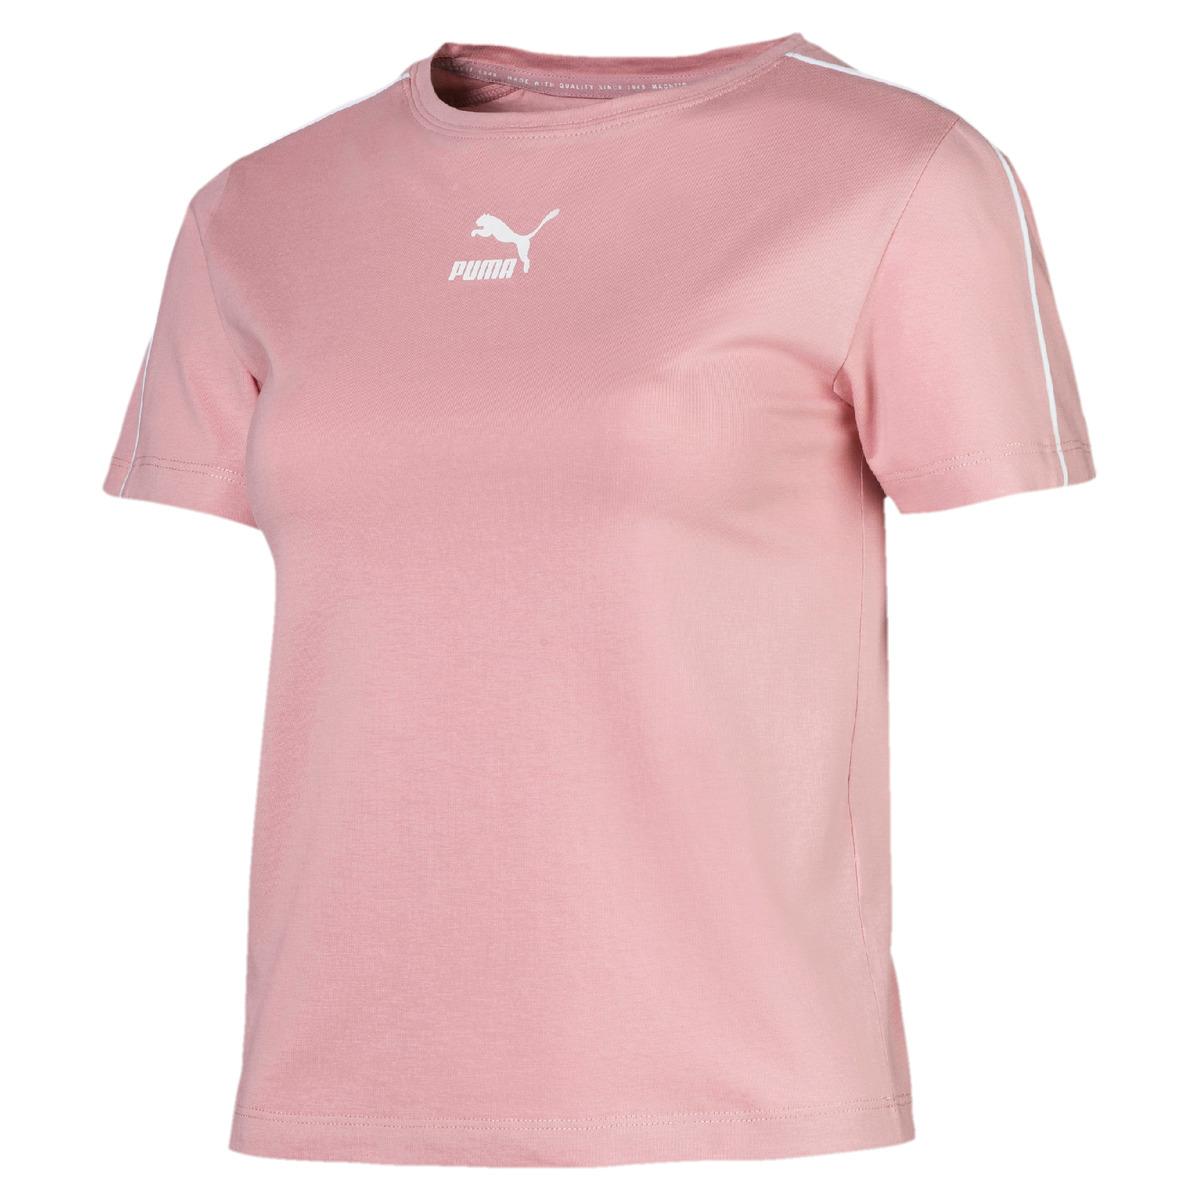 PUMA Cotton Classics Tight T-shirt in Pink - Lyst